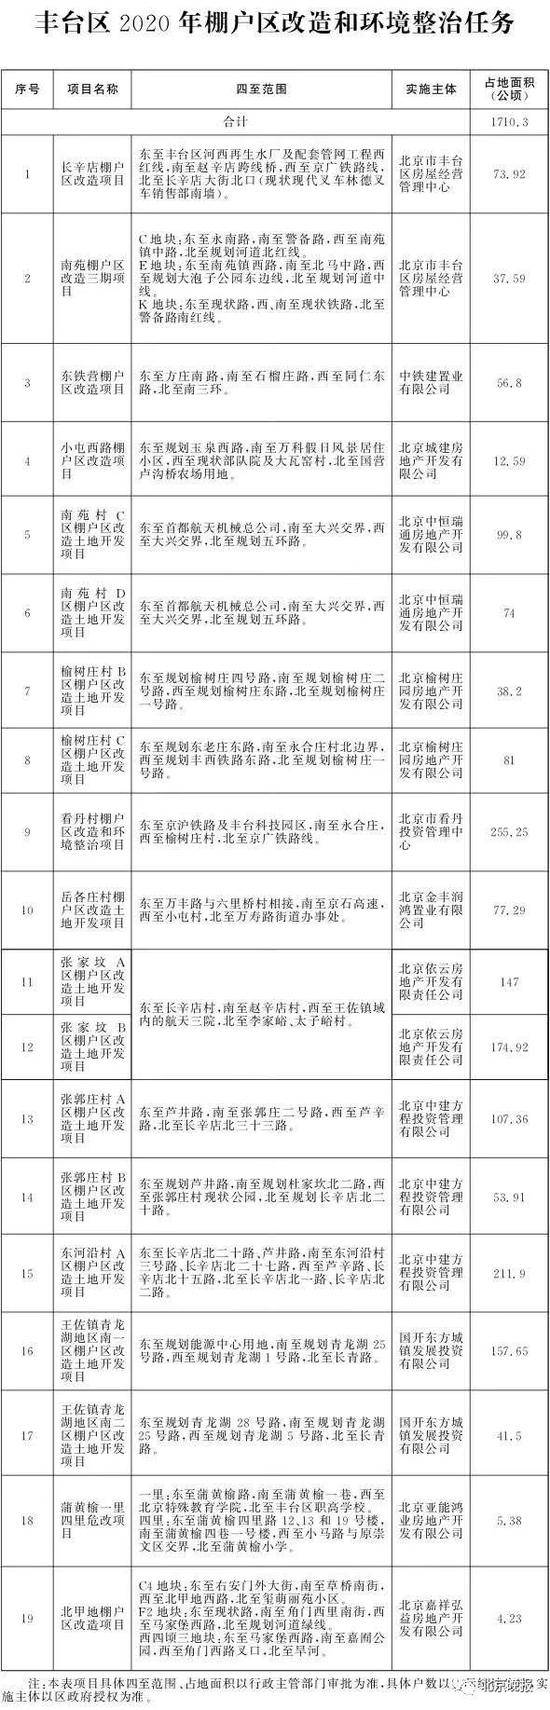 北京2020年棚改任务发布 共115个项目8686户